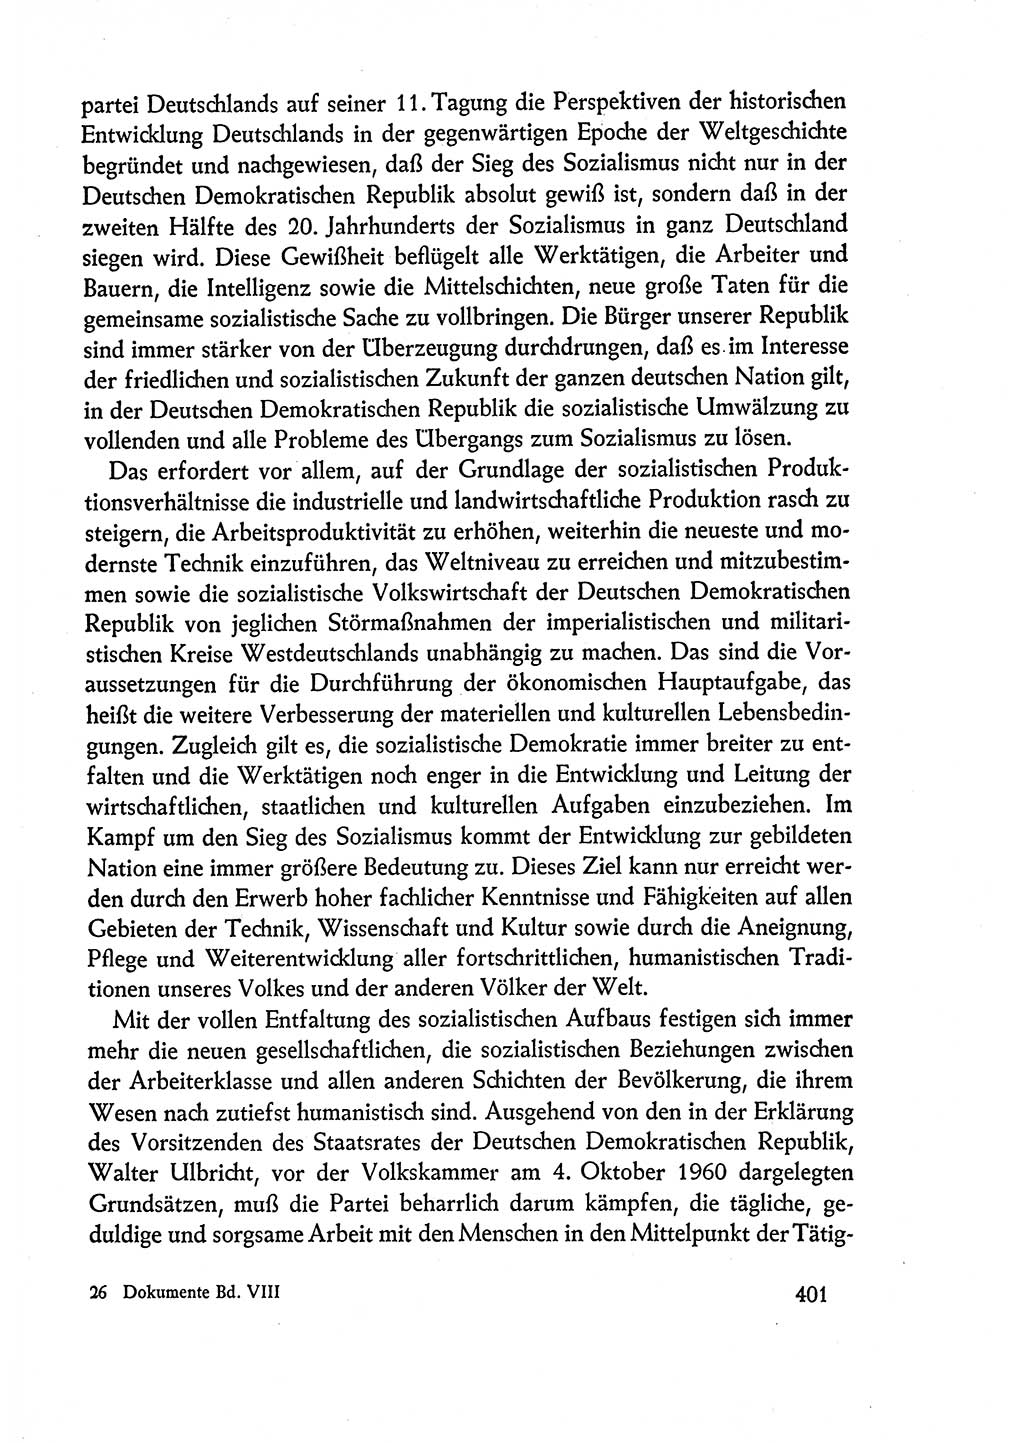 Dokumente der Sozialistischen Einheitspartei Deutschlands (SED) [Deutsche Demokratische Republik (DDR)] 1960-1961, Seite 401 (Dok. SED DDR 1960-1961, S. 401)